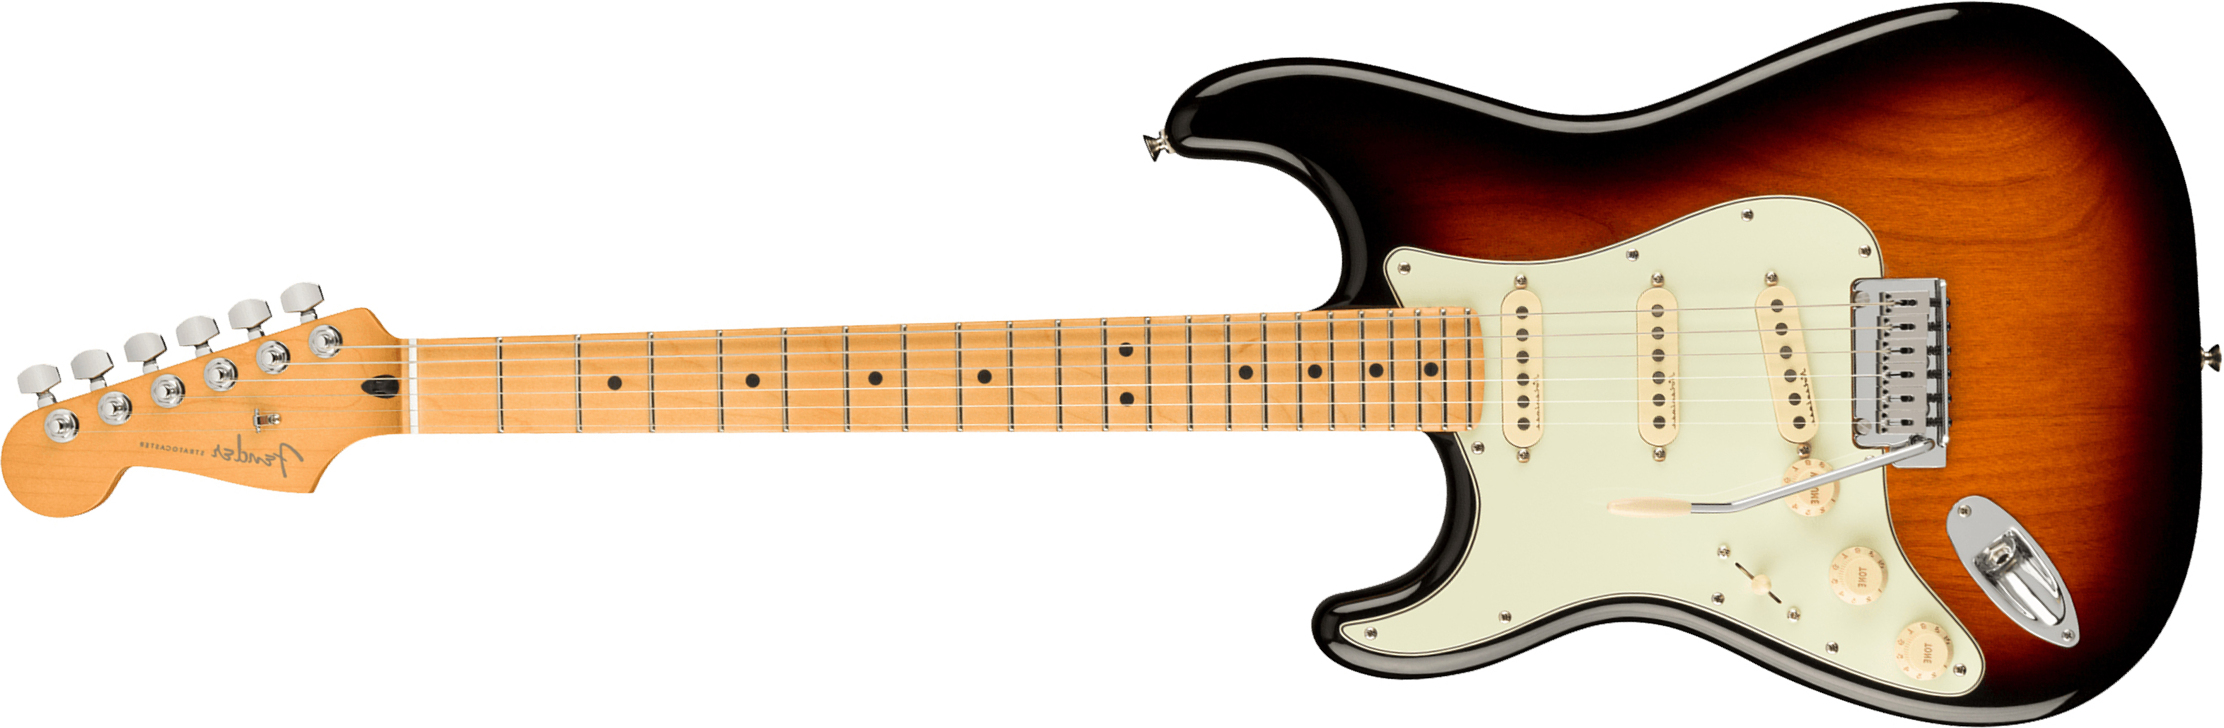 Fender Strat Player Plus Lh Mex Gaucher 3s Trem Mn - 3-color Sunburst - Left-handed electric guitar - Main picture